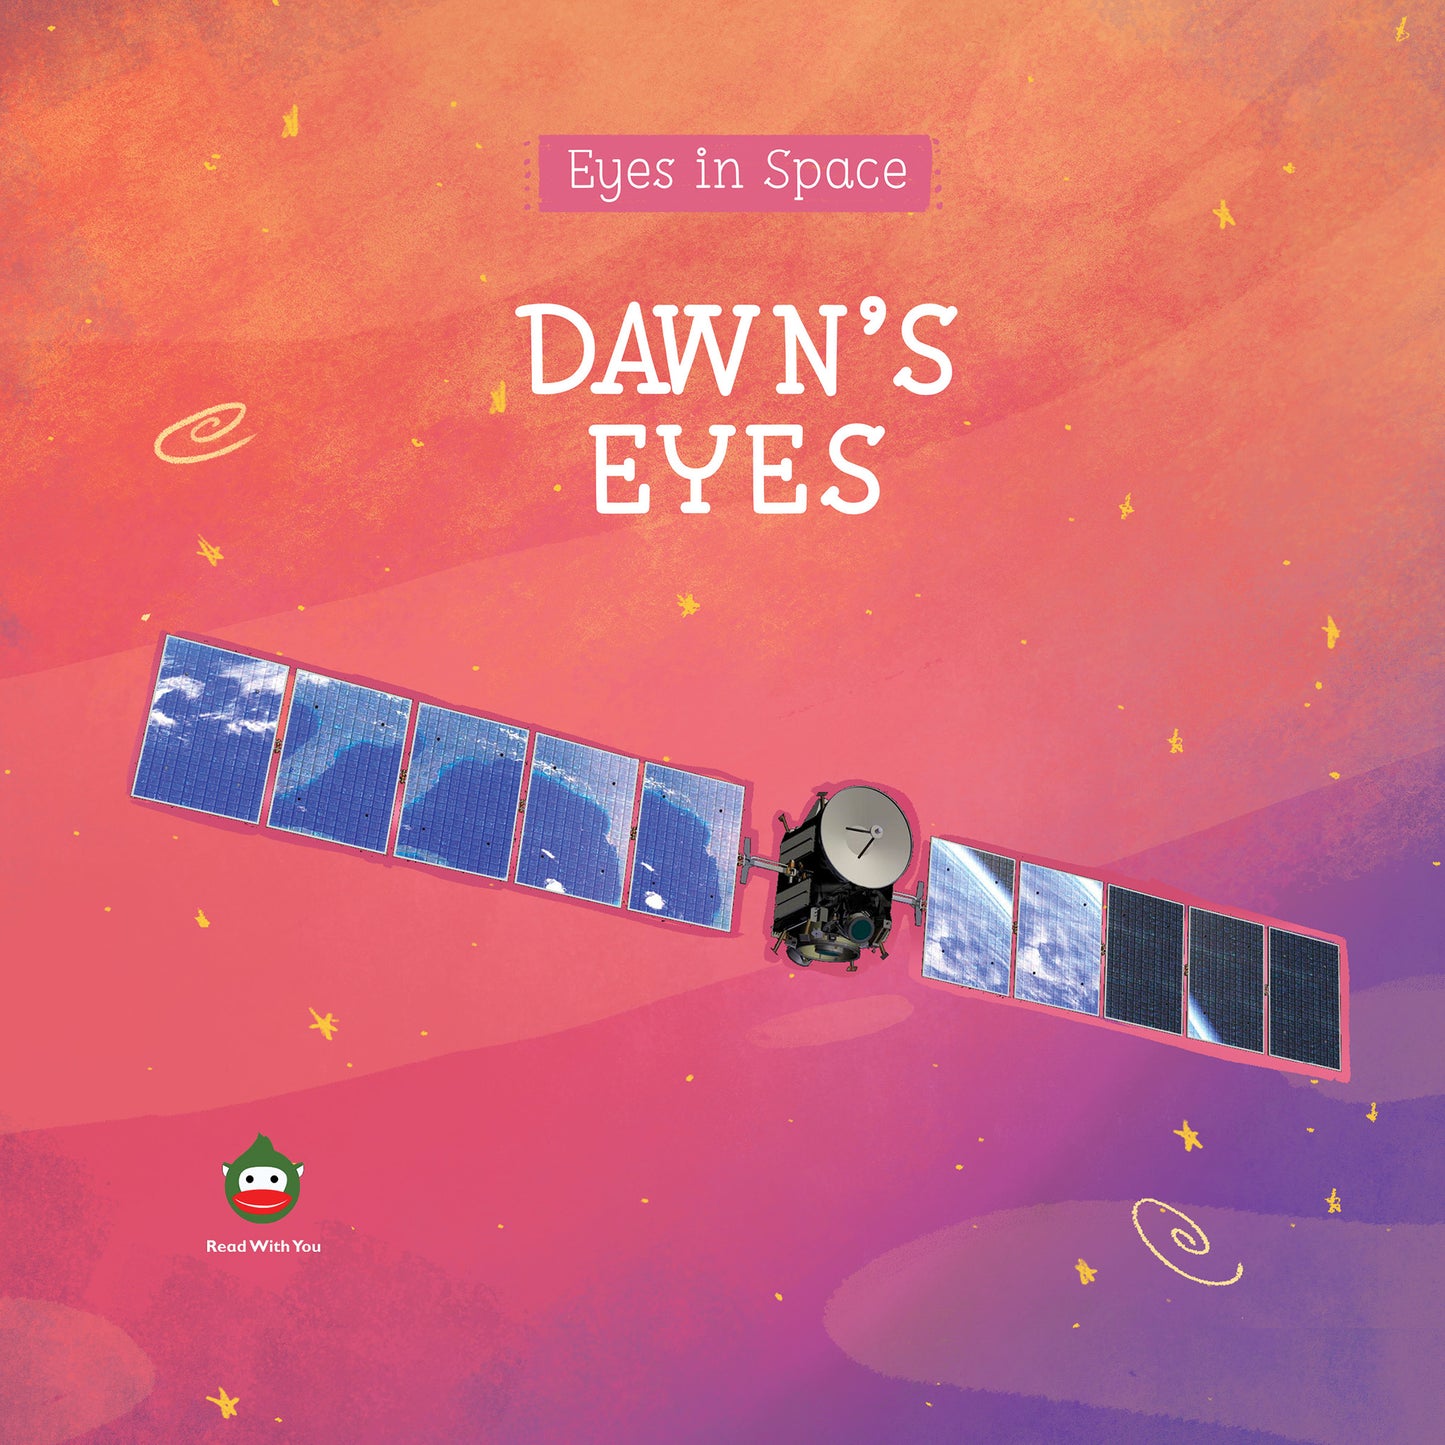 Dawn's Eyes